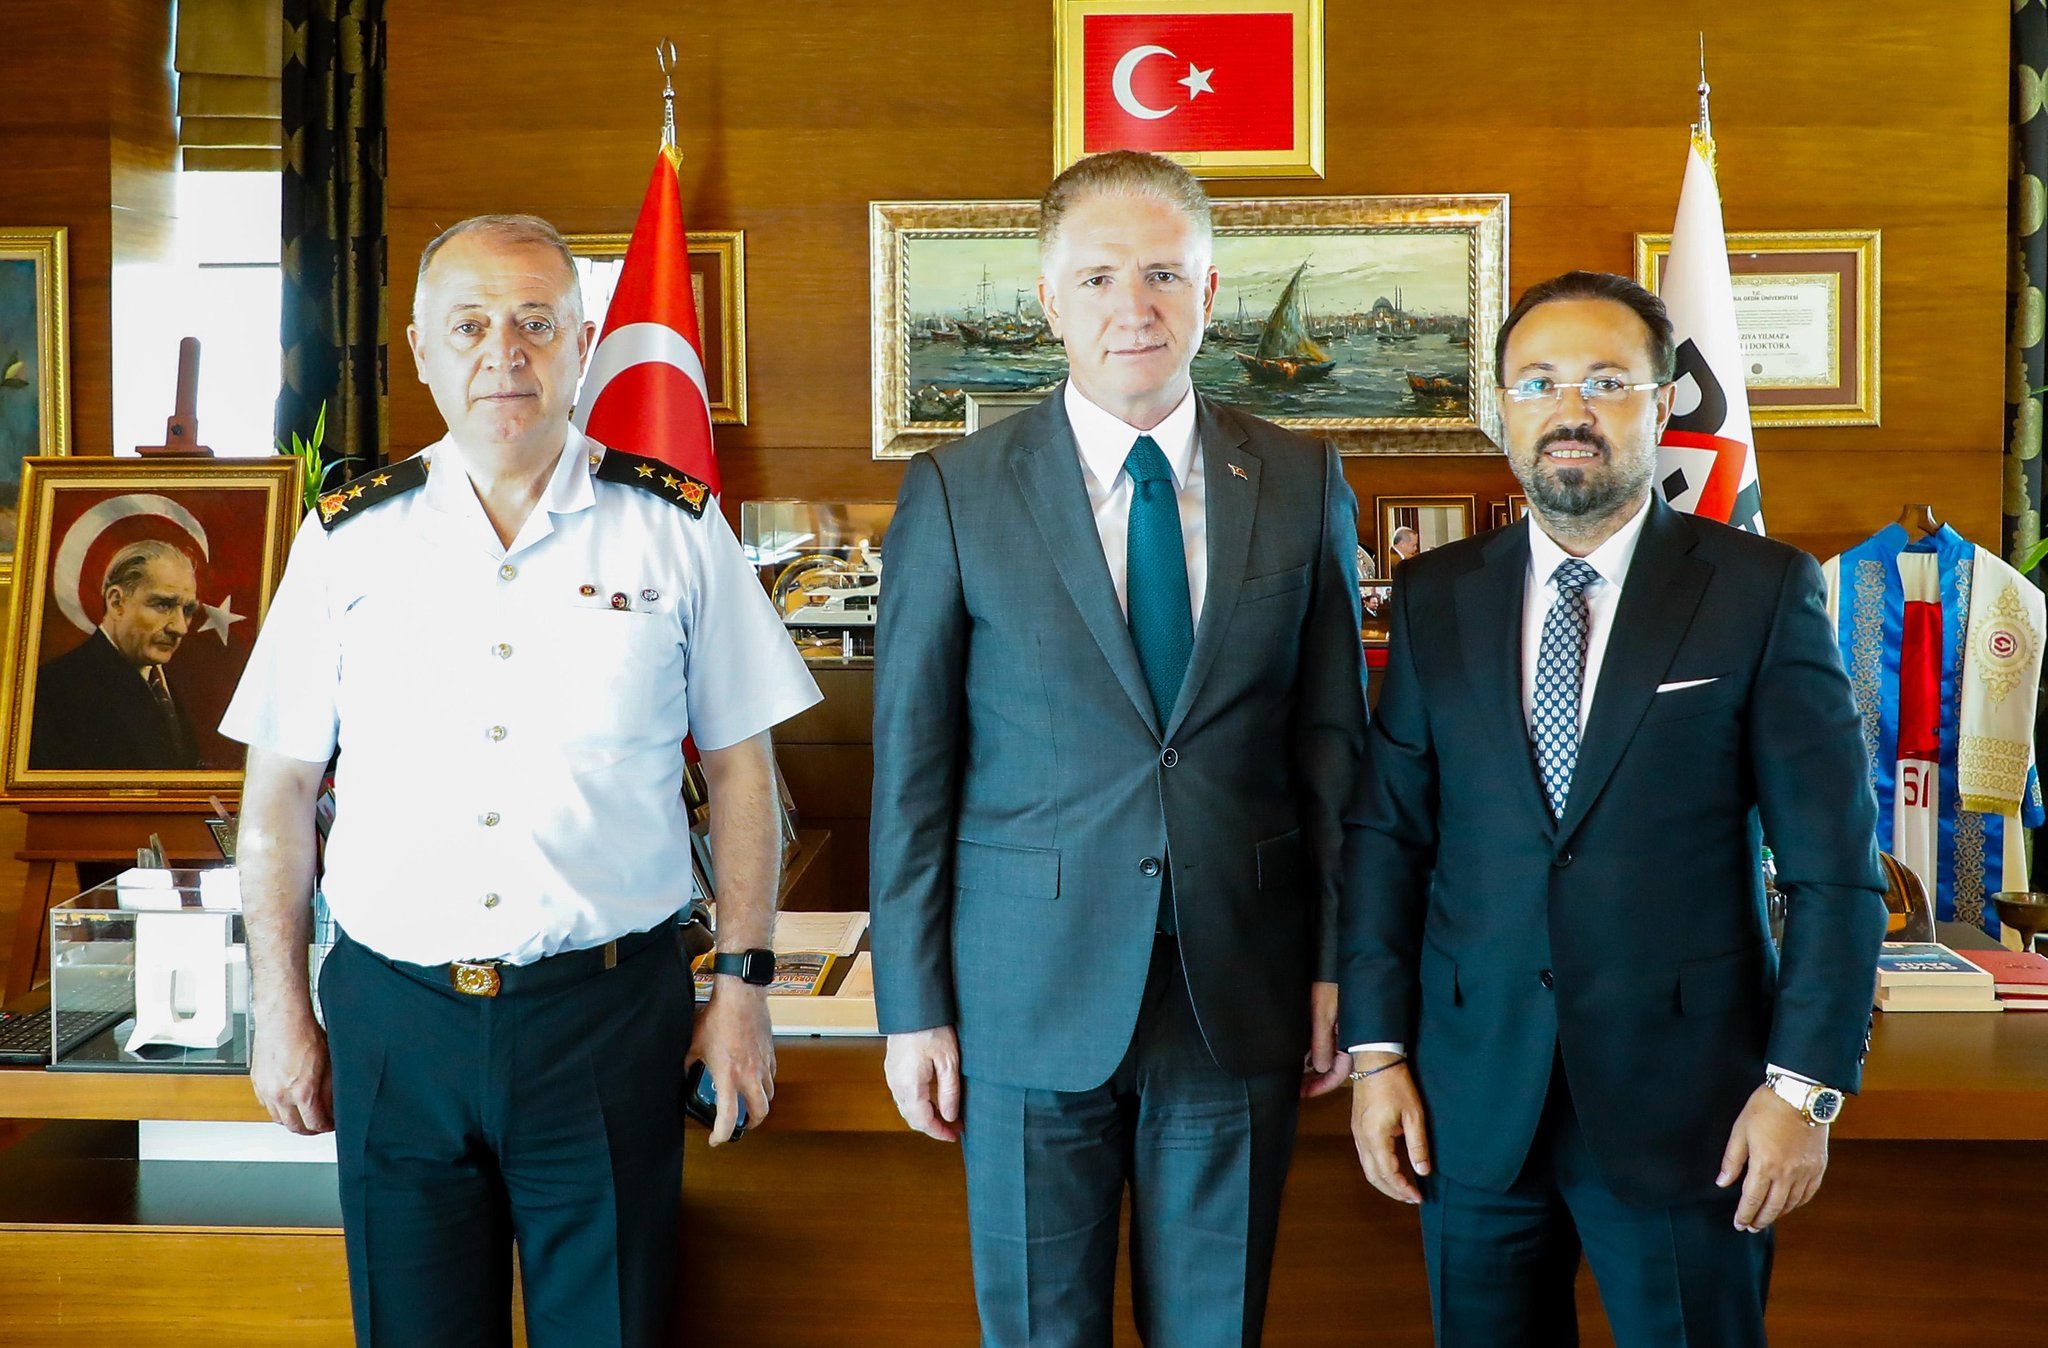 İstanbul Valisi Sayın Davut Gül ve İl Jandarma Komutanı Tümgeneral Sayın Yusuf Kenan Topçu ile Görüşme